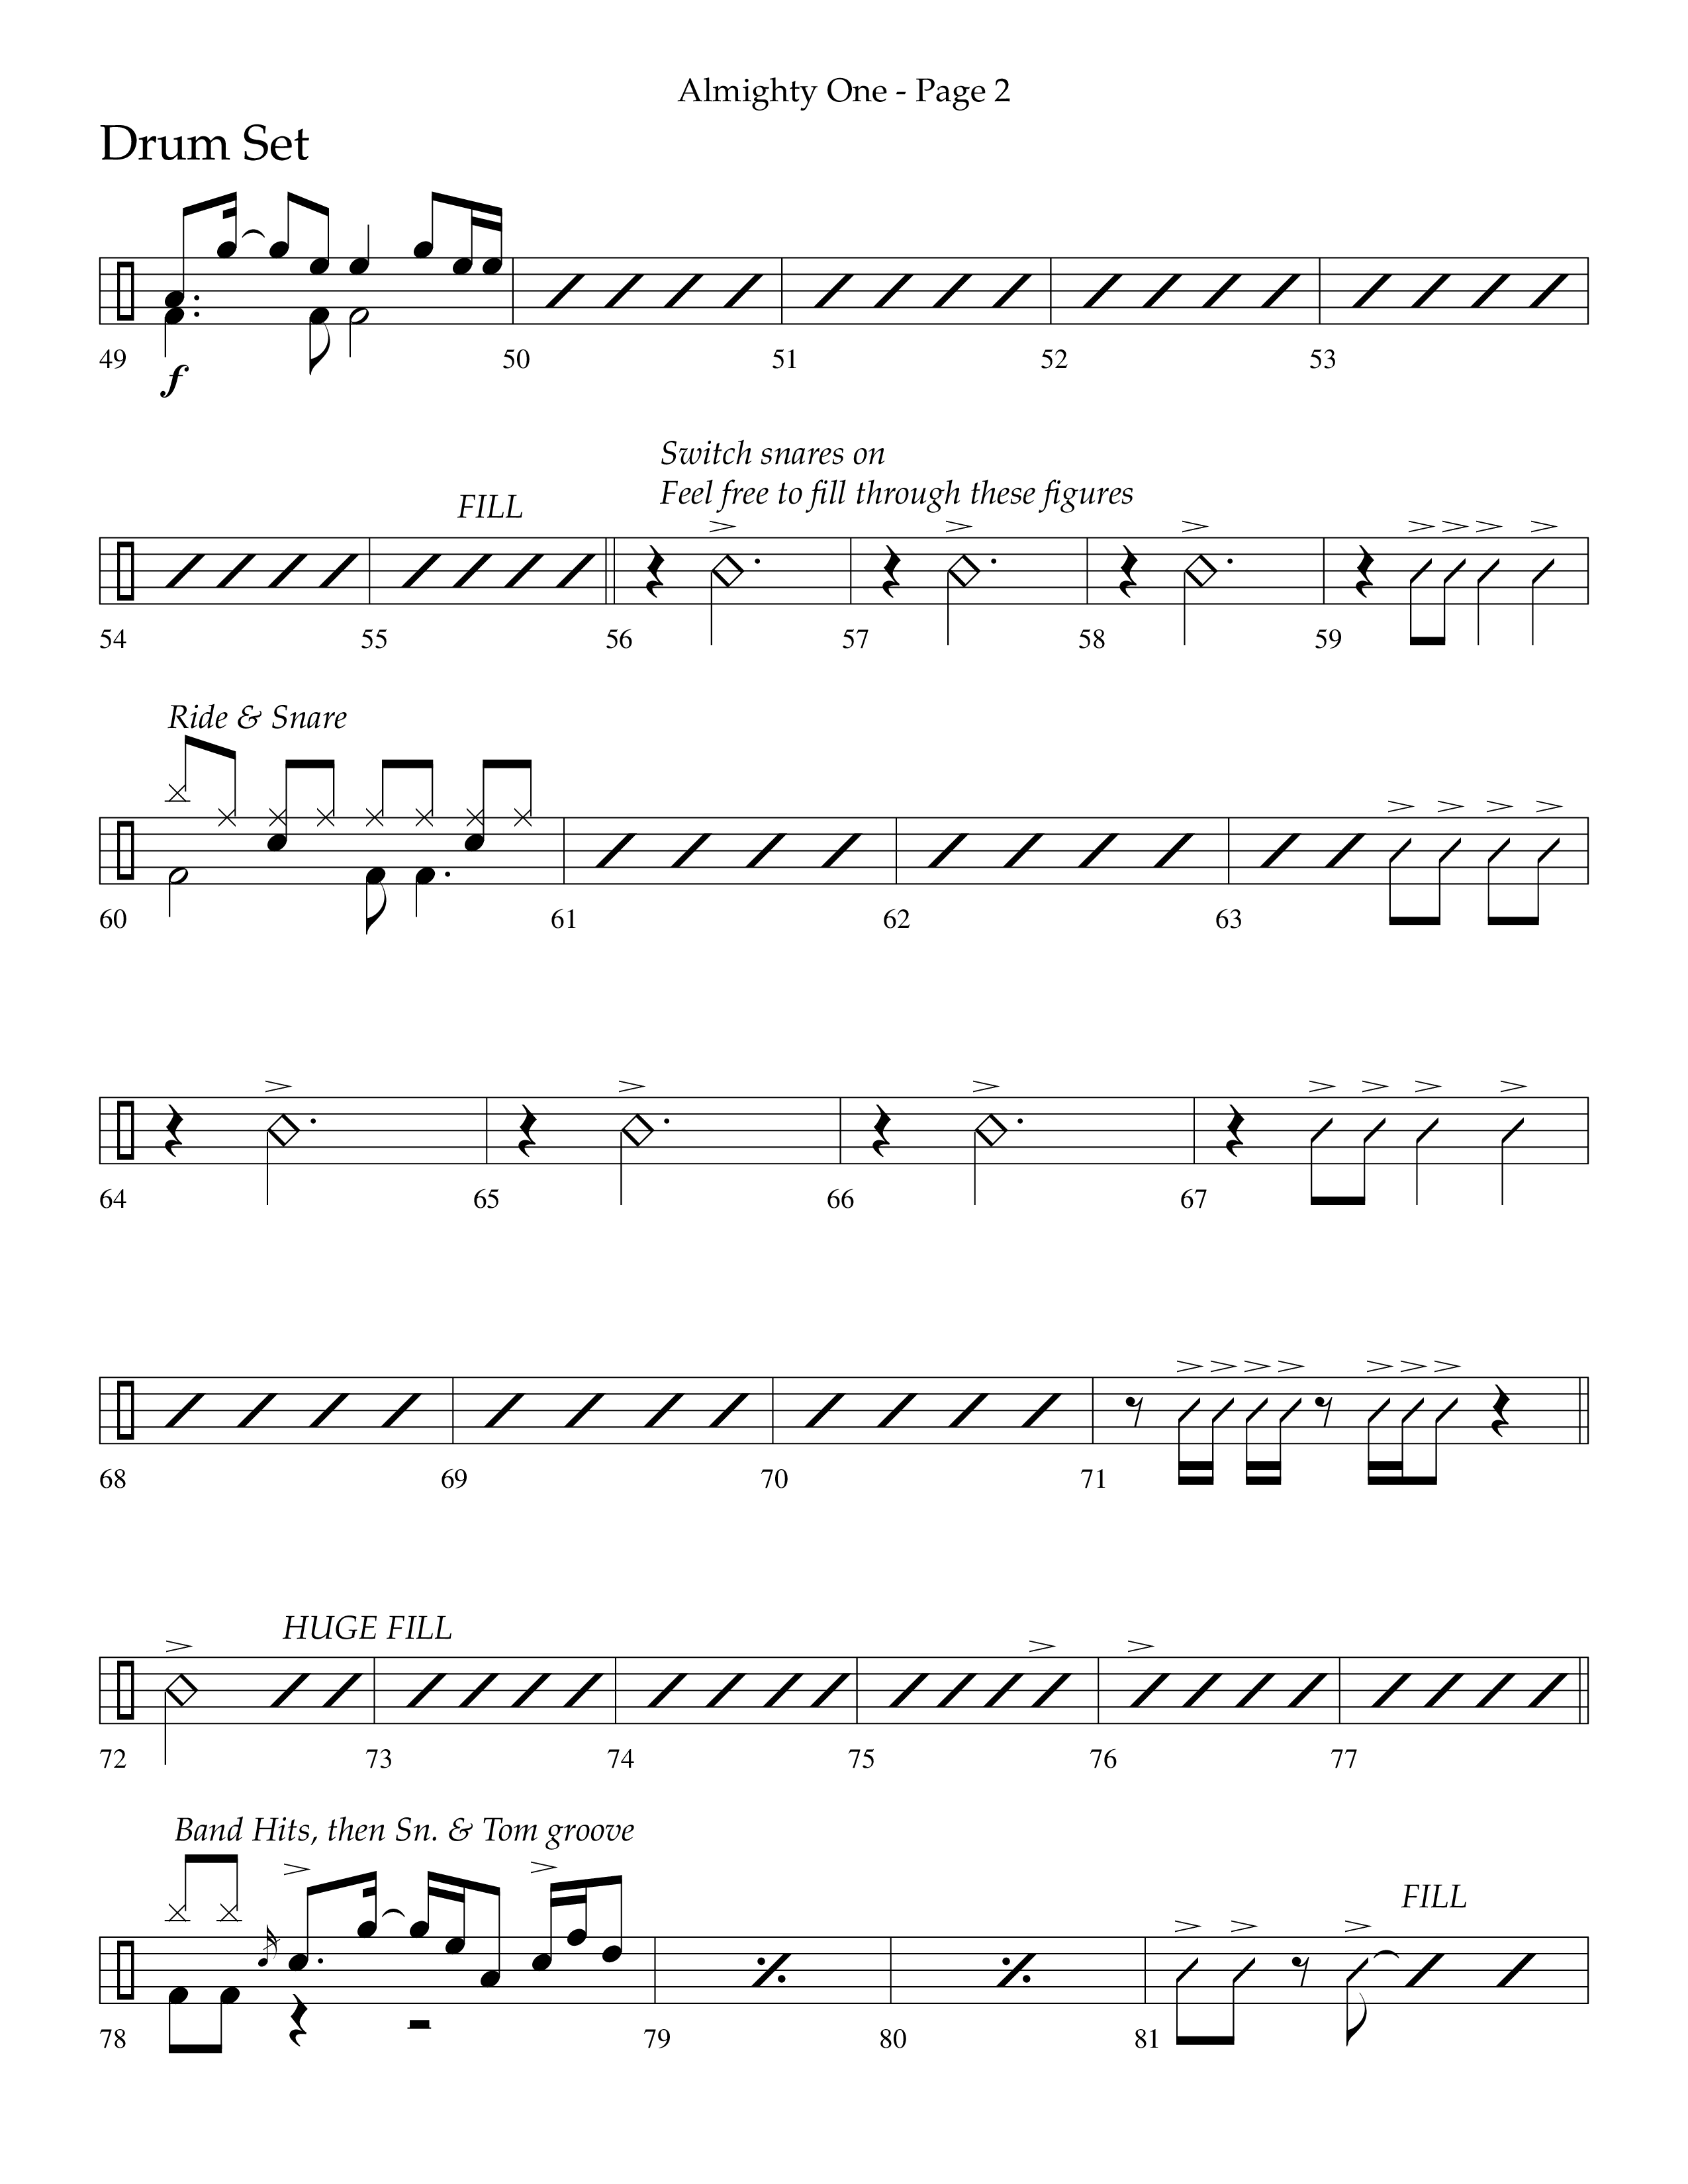 Almighty One (Choral Anthem SATB) Drum Set (Lifeway Choral / Arr. Bradley Knight)